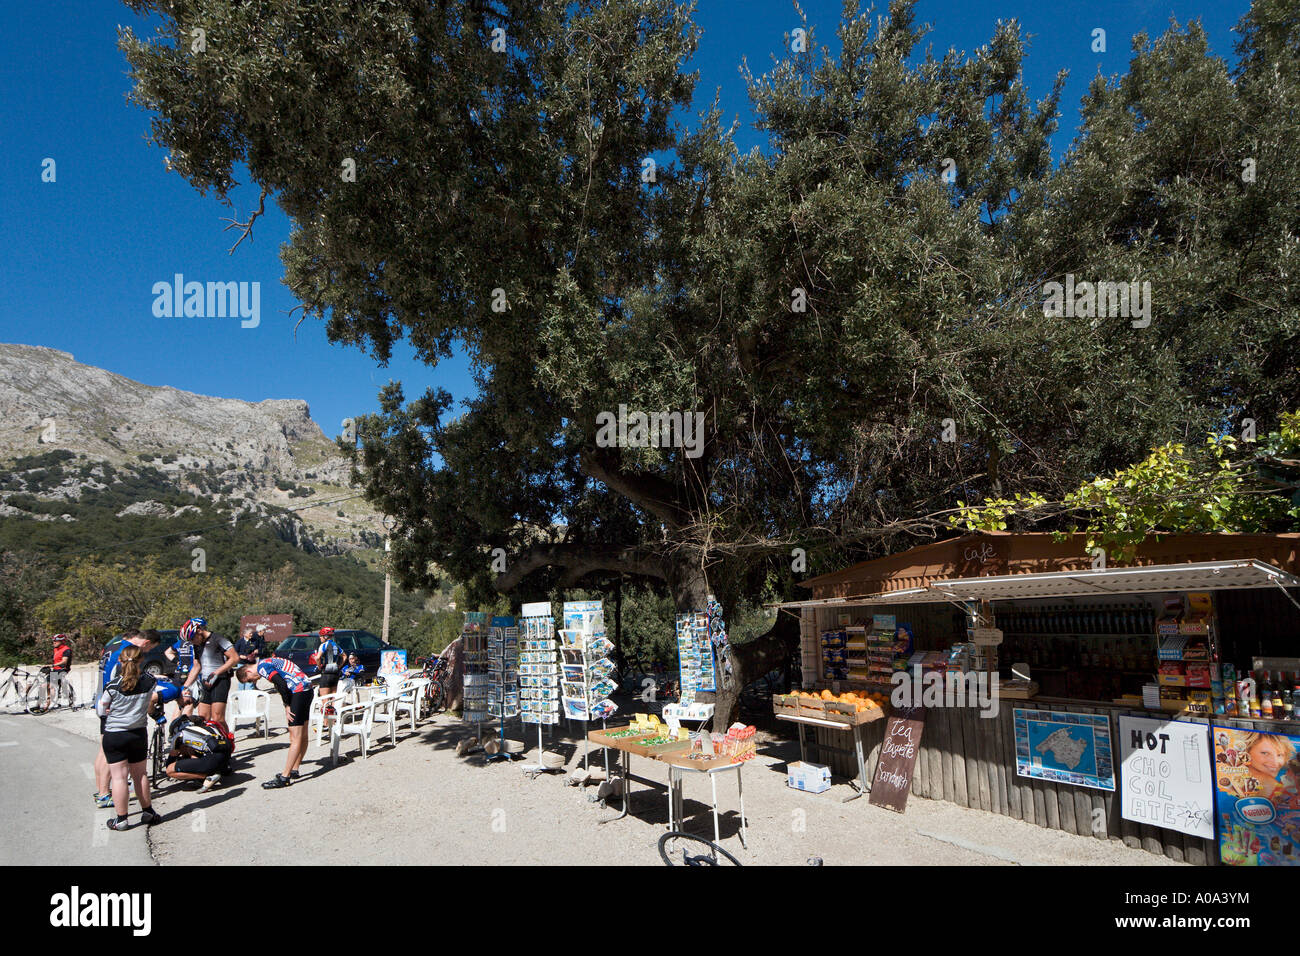 Radfahrer vor einem Straßencafé auf einer Bergstraße in der Nähe von Sa Calobra, Mallorca, Balearen, Spanien Stockfoto